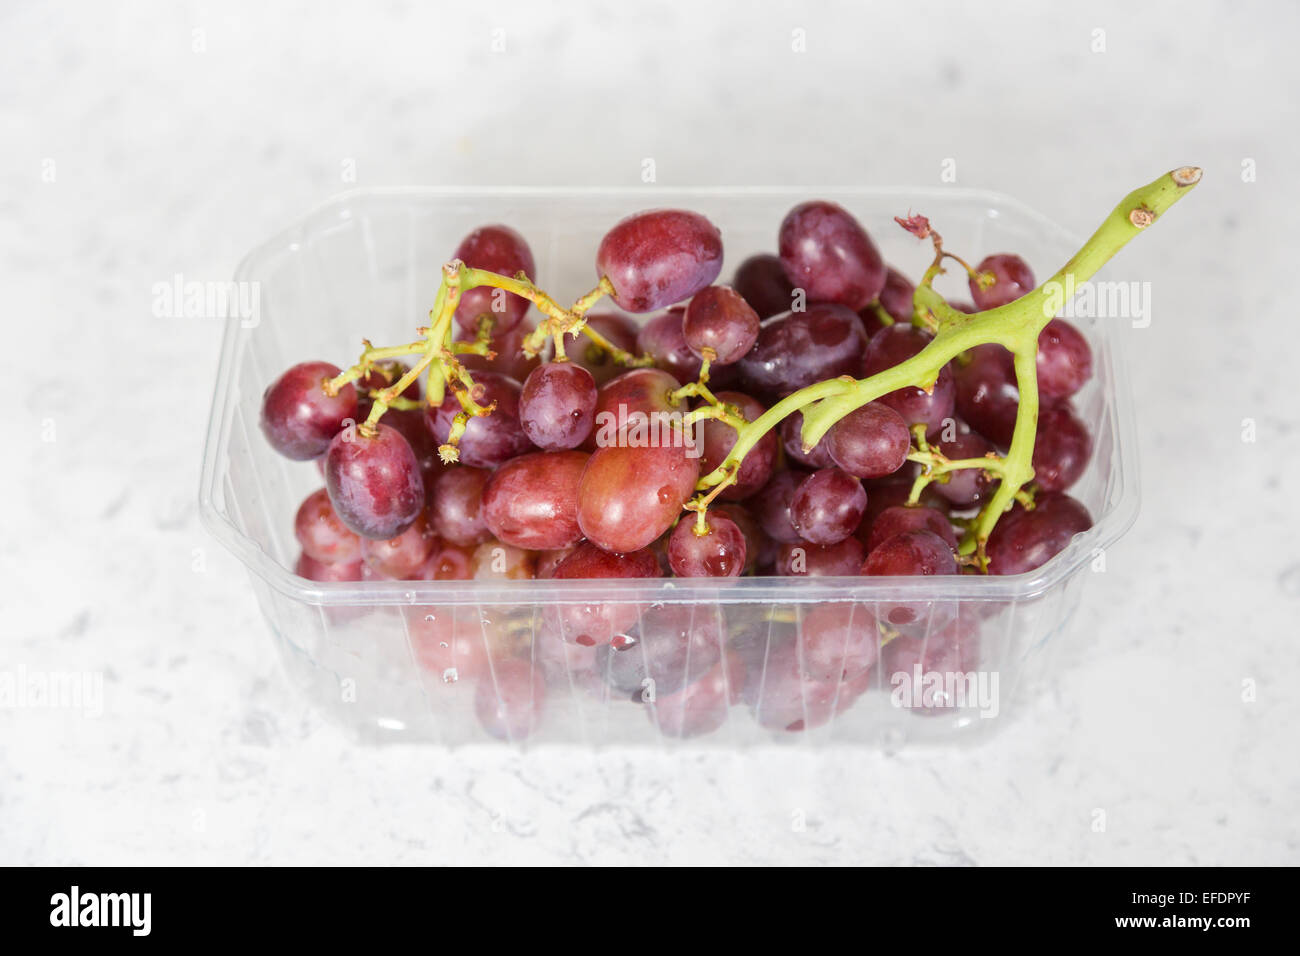 Gesunde Frucht mit Antioxidantien: einen großen Bund frische, reife rote Trauben in einem offenen Behälter aus klarem Kunststoff Verpackung bereit für Essen Stockfoto